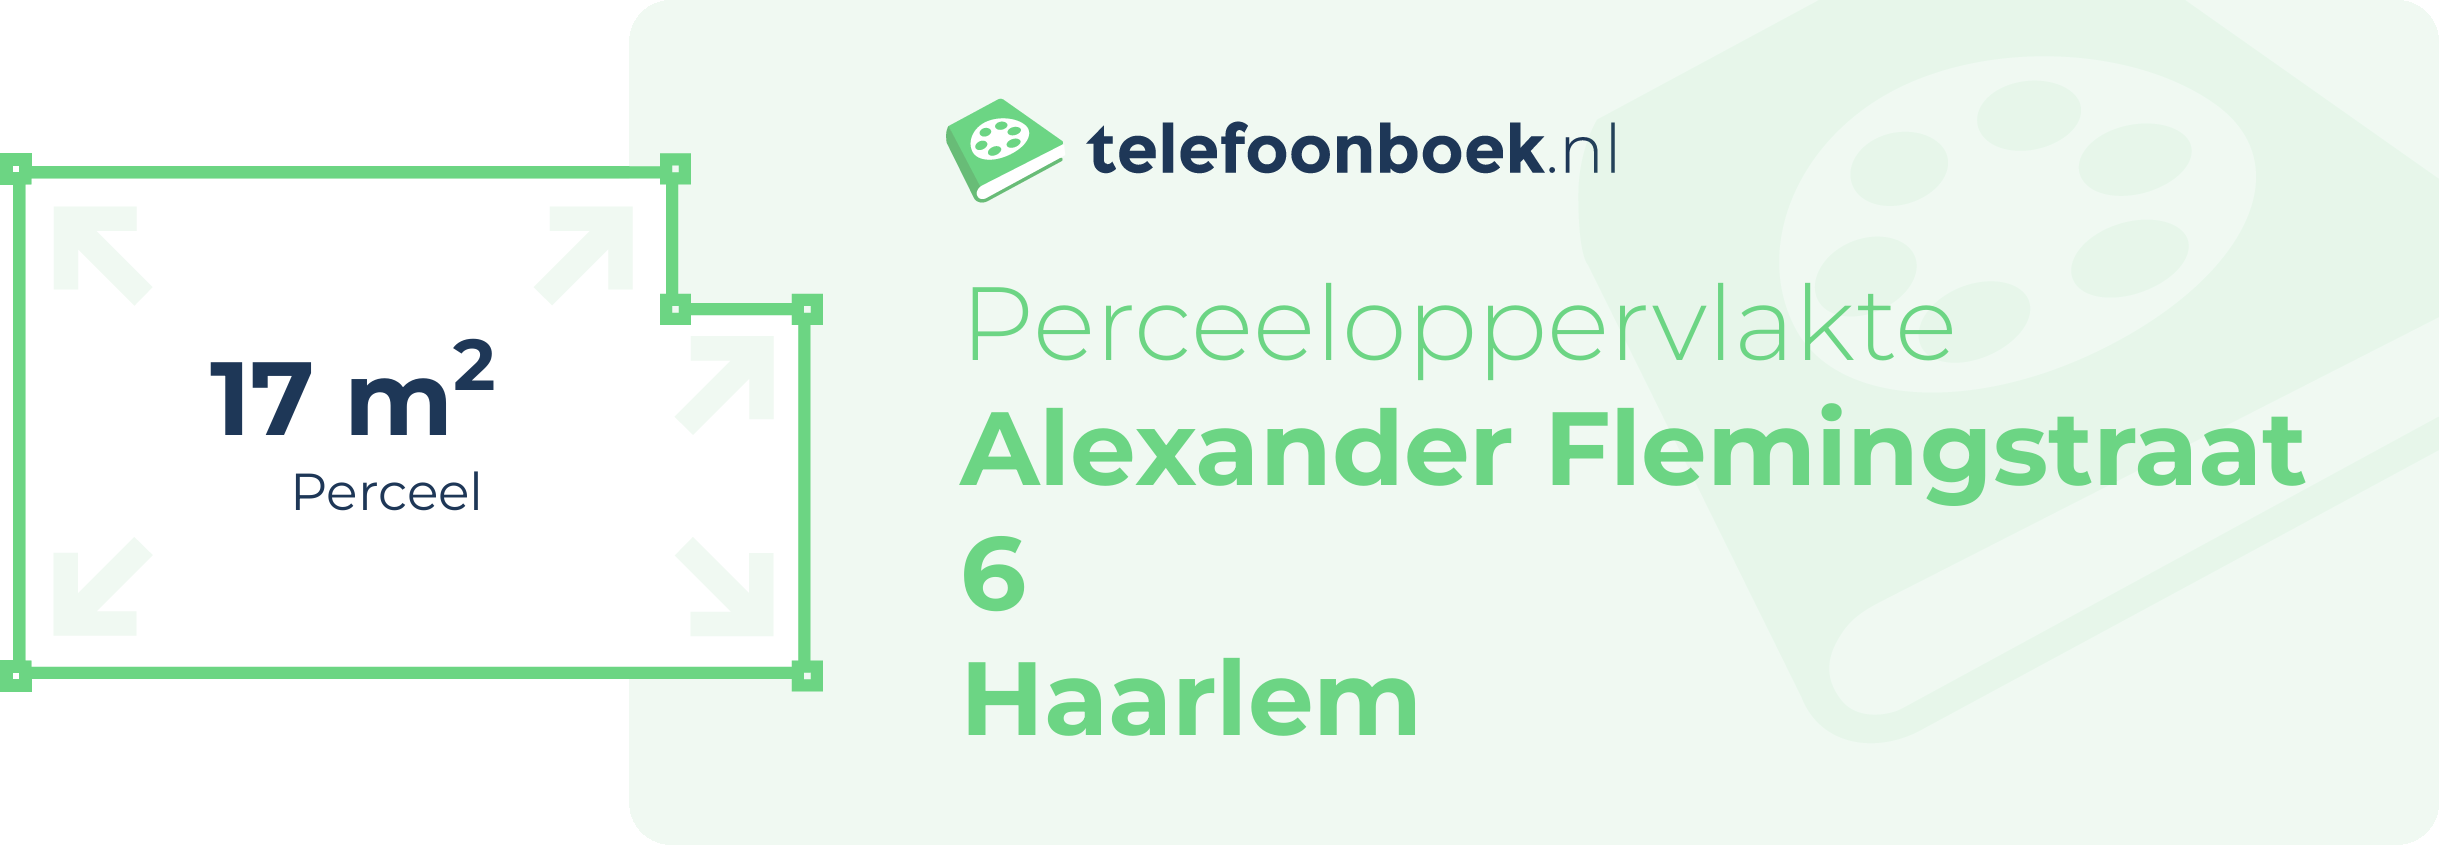 Perceeloppervlakte Alexander Flemingstraat 6 Haarlem